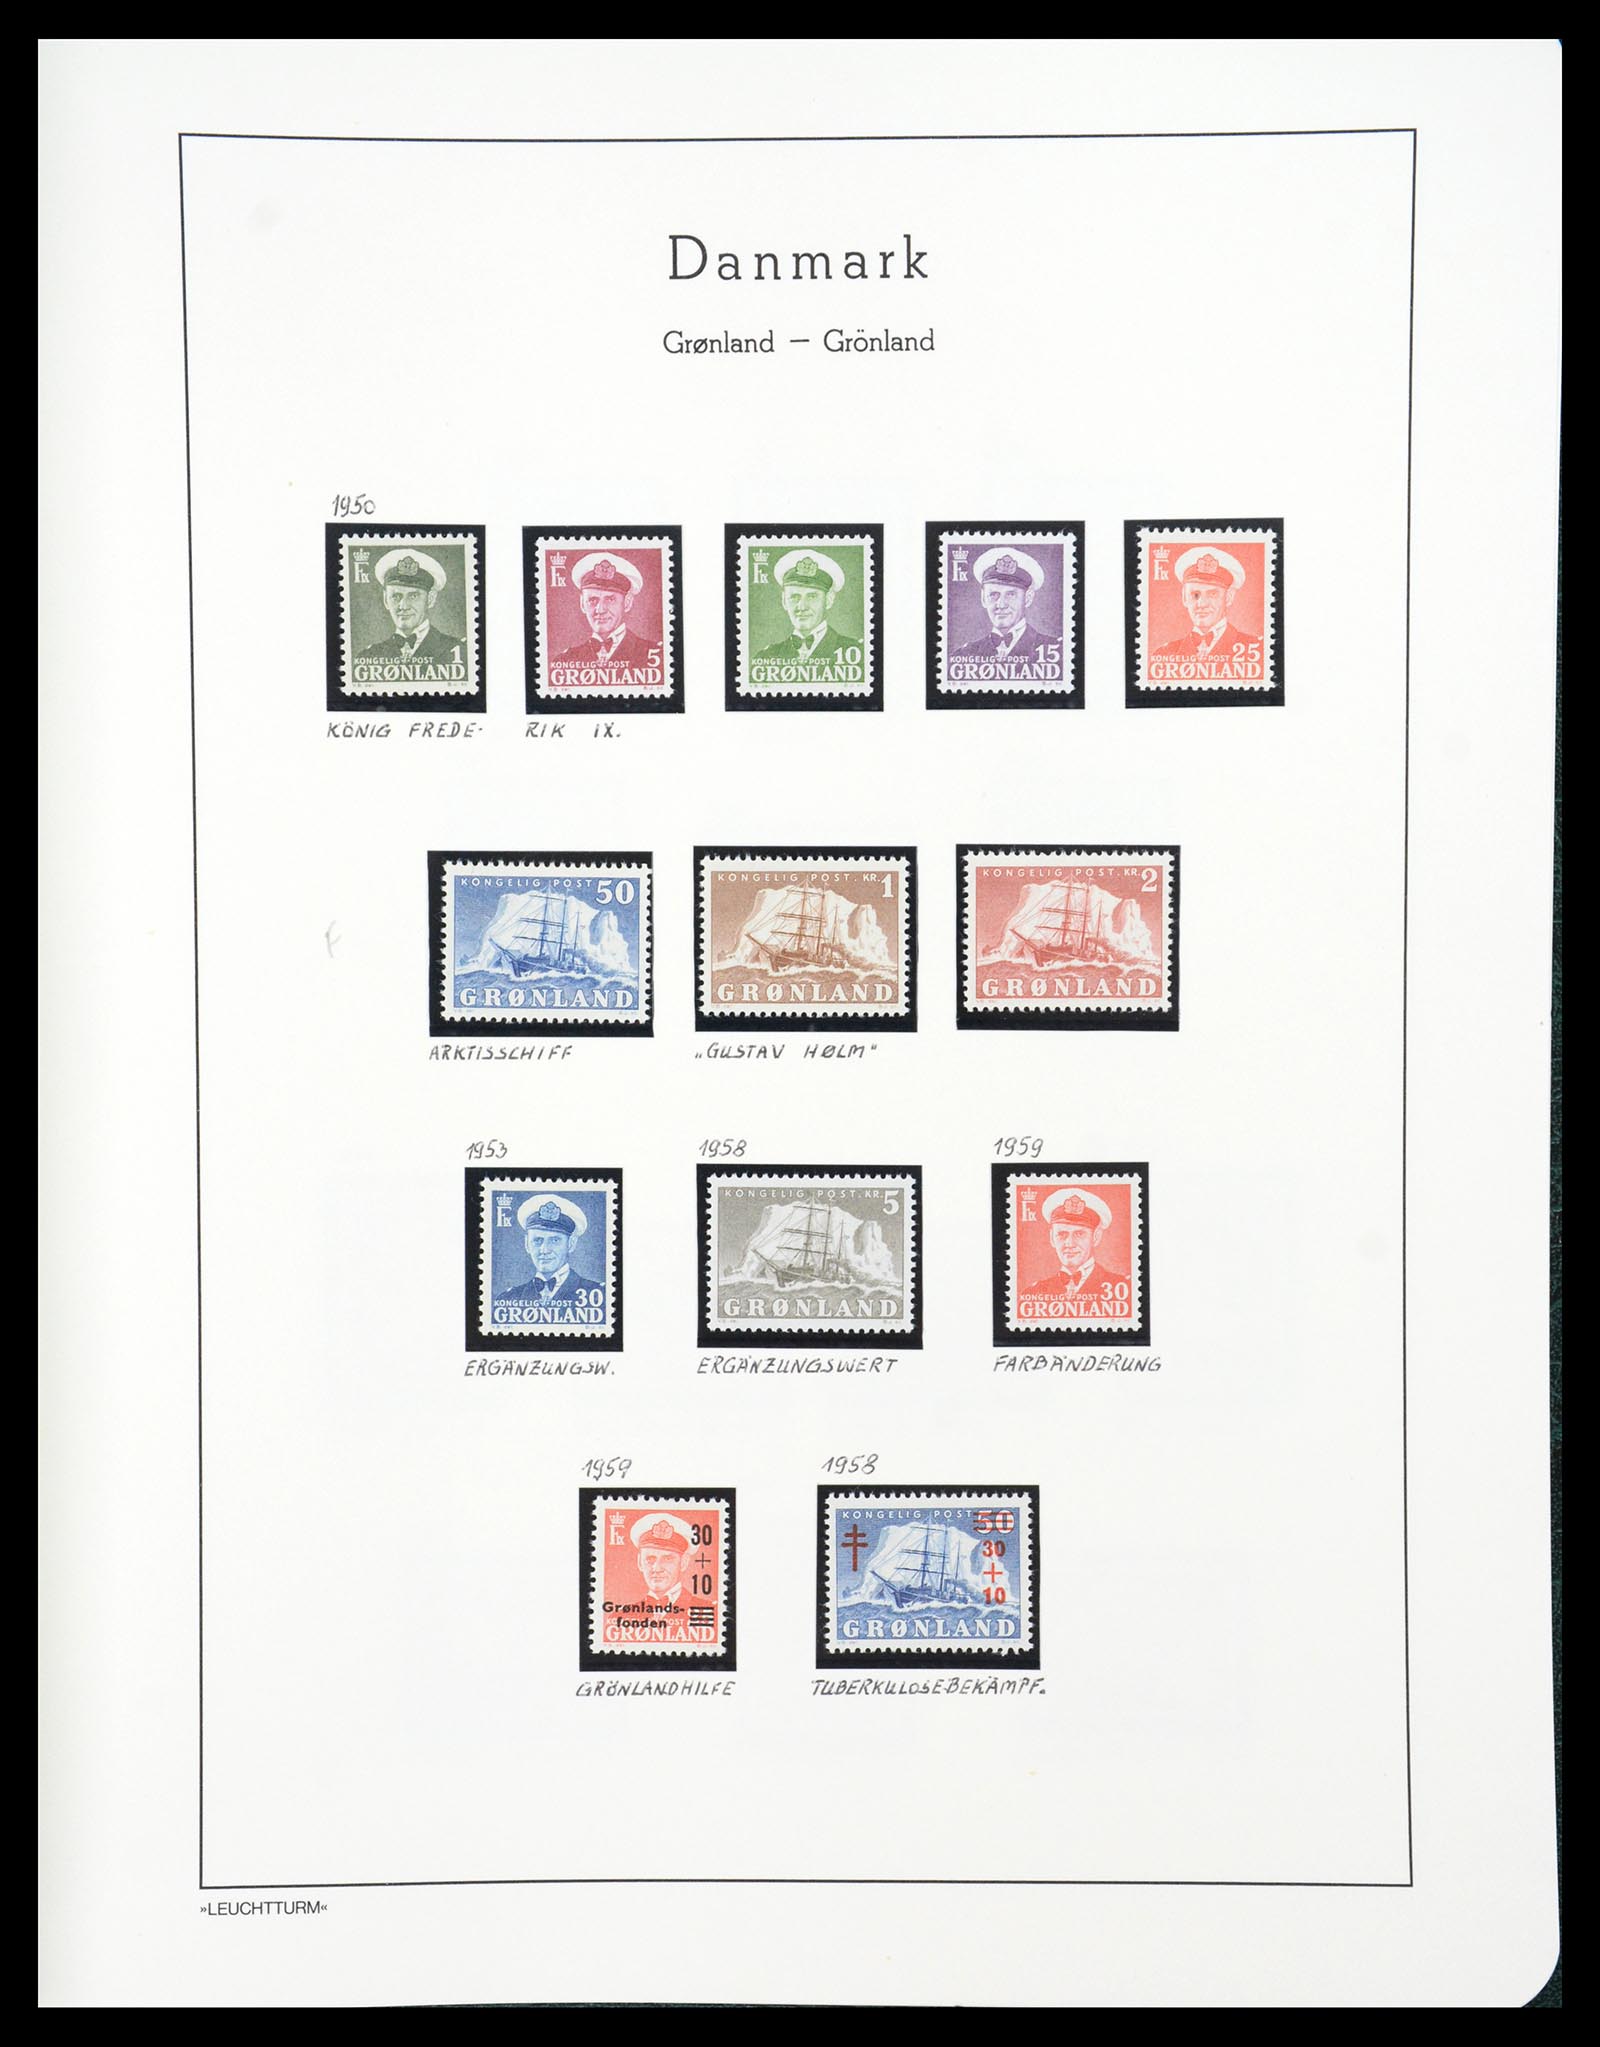 36612 175 - Stamp collection 36612 Denemarken 1851-1990.